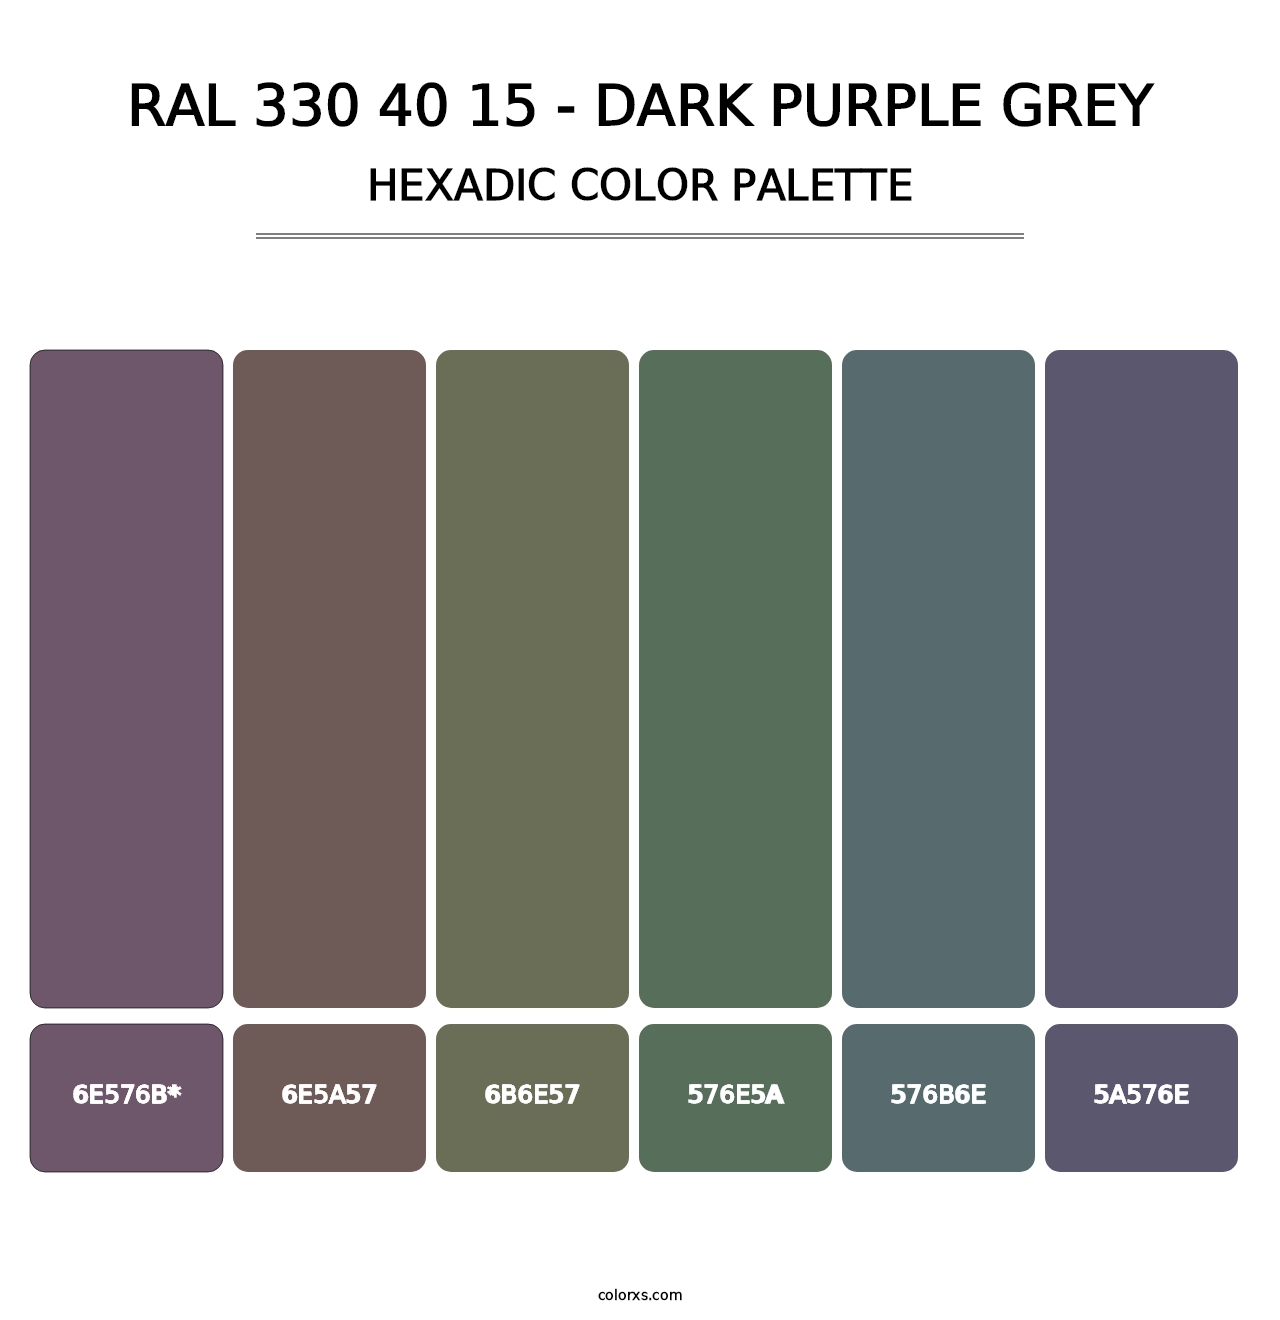 RAL 330 40 15 - Dark Purple Grey - Hexadic Color Palette